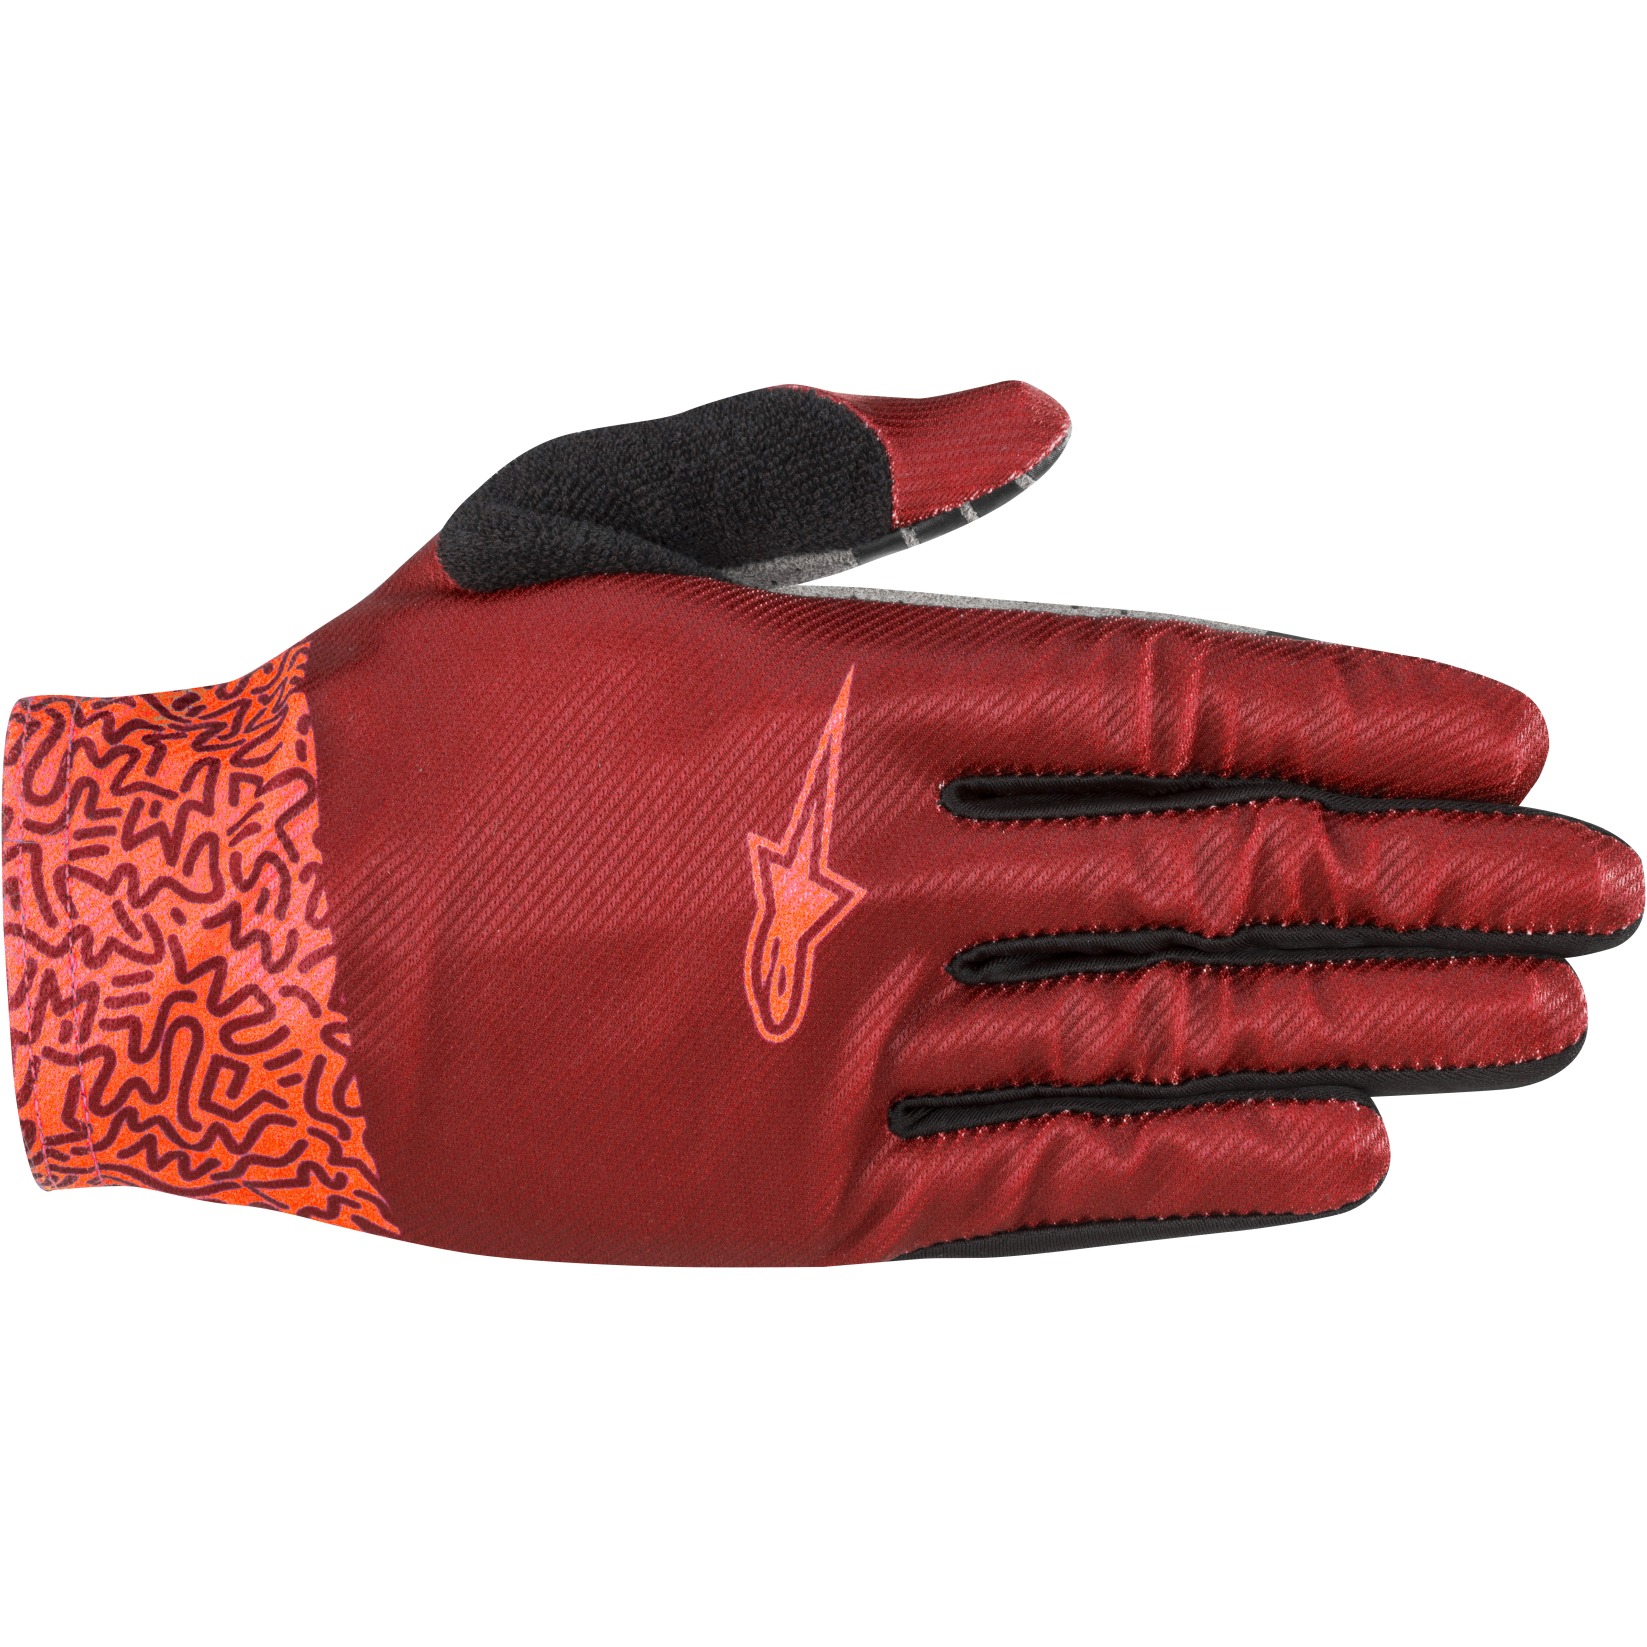 Produktbild von Alpinestars Stella Aspen Pro Lite Handschuhe Damen - rot